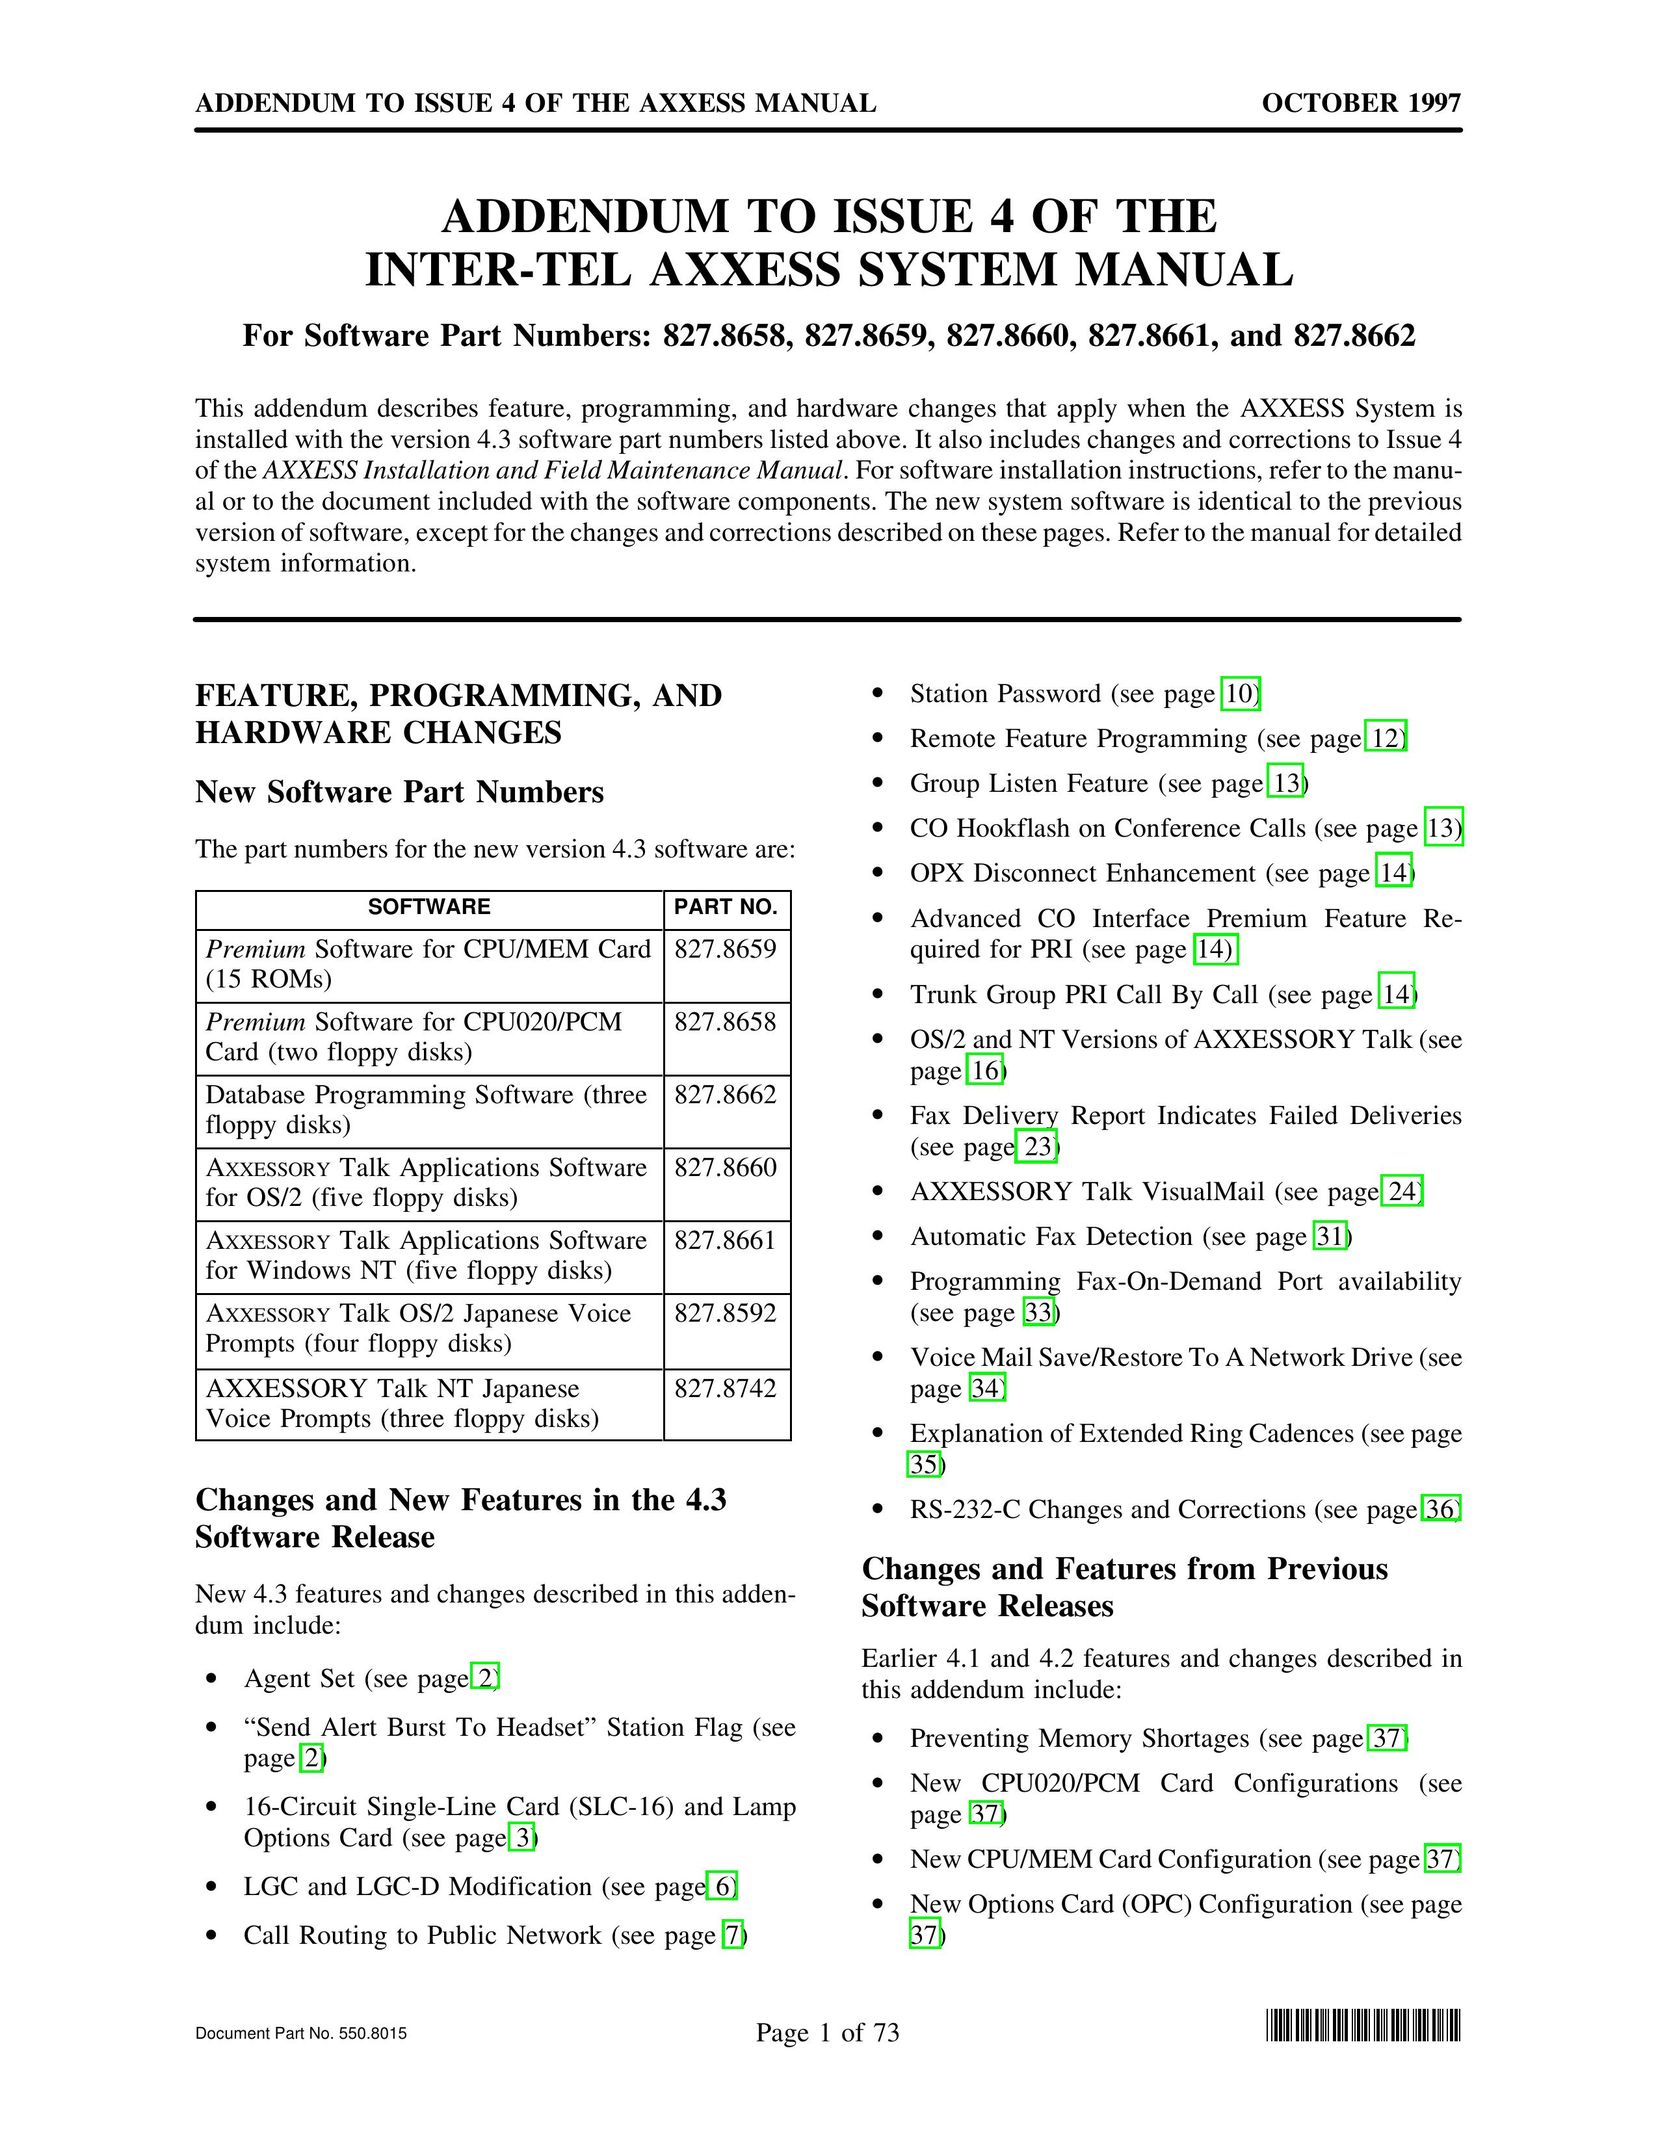 Inter-Tel 827.8661 Telephone User Manual